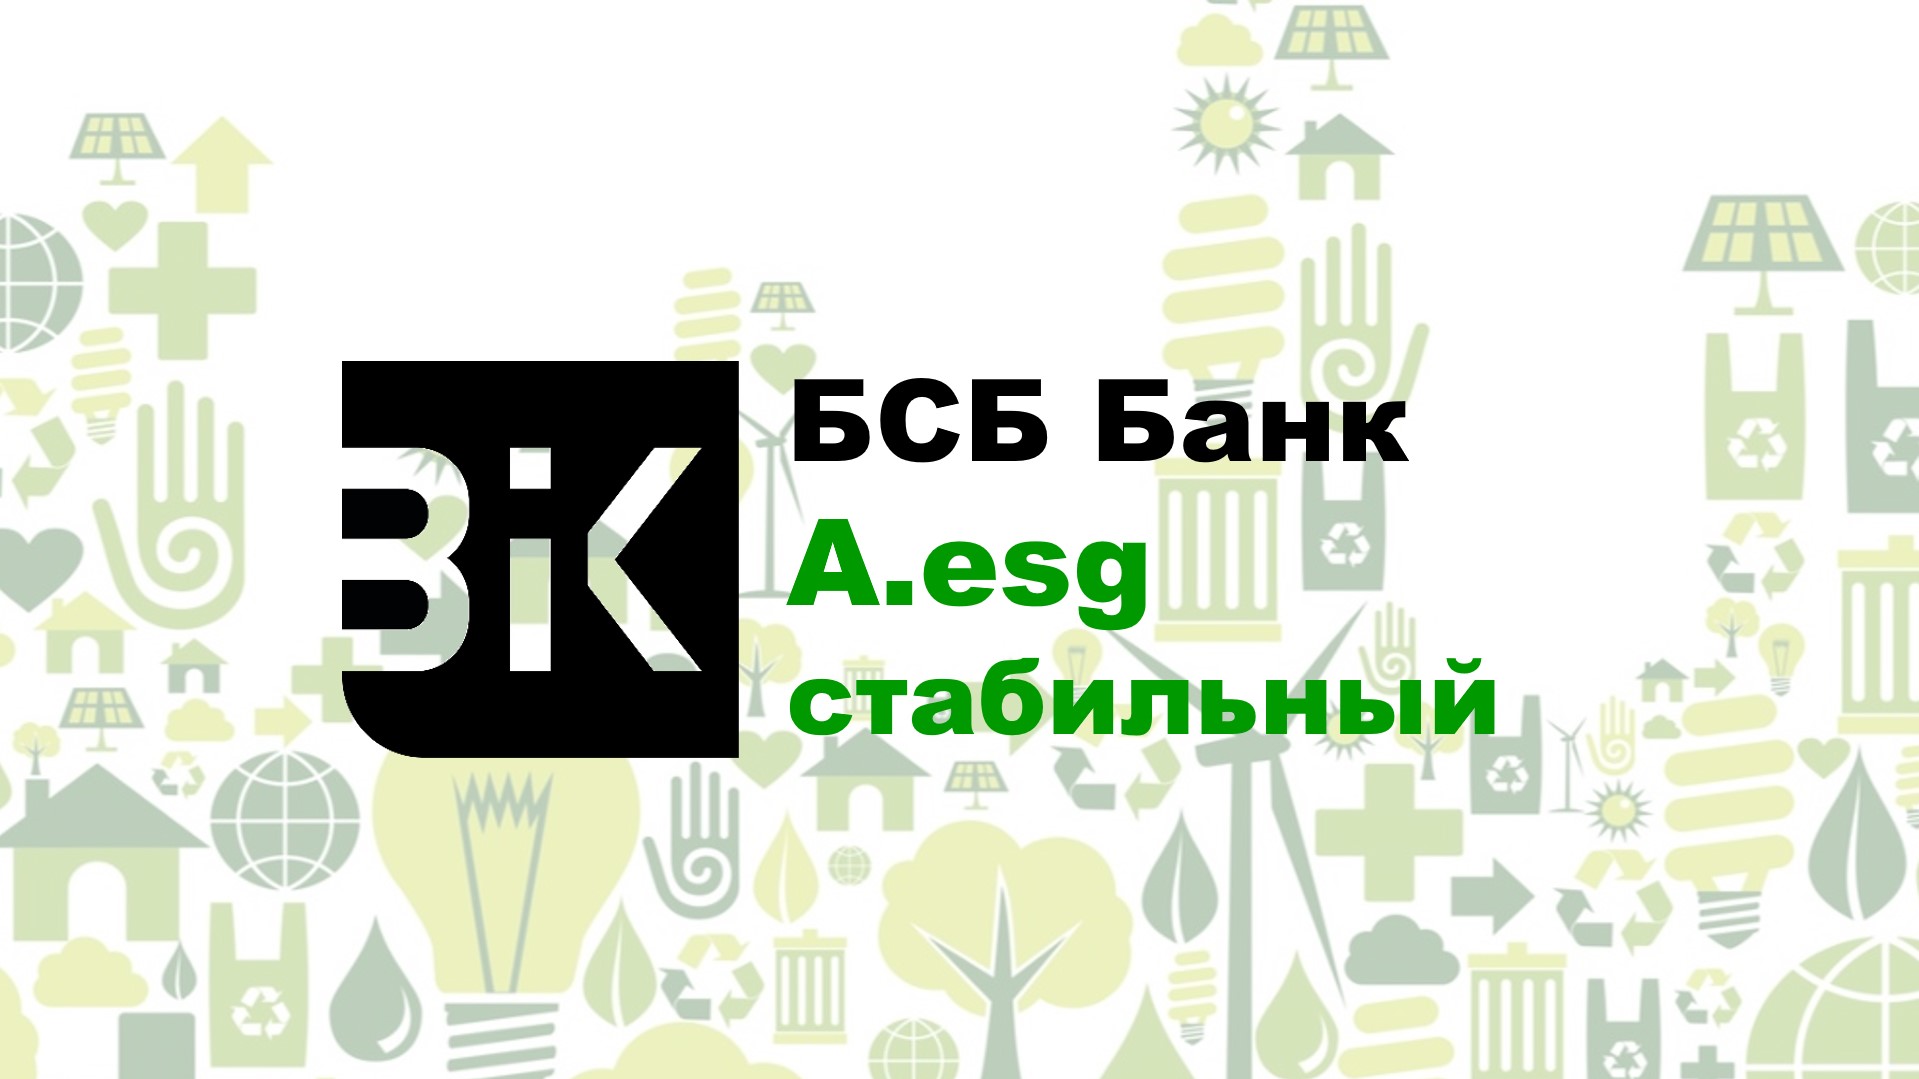 Рейтинговое агентство BIK Ratings впервые в Республике Беларусь присвоило ESG рейтинг. Первой компанией, получившей ESG рейтинг, стало ЗАО «БСБ Банк», которому был присвоен рейтинг категории A.esg (прогноз стабильный).